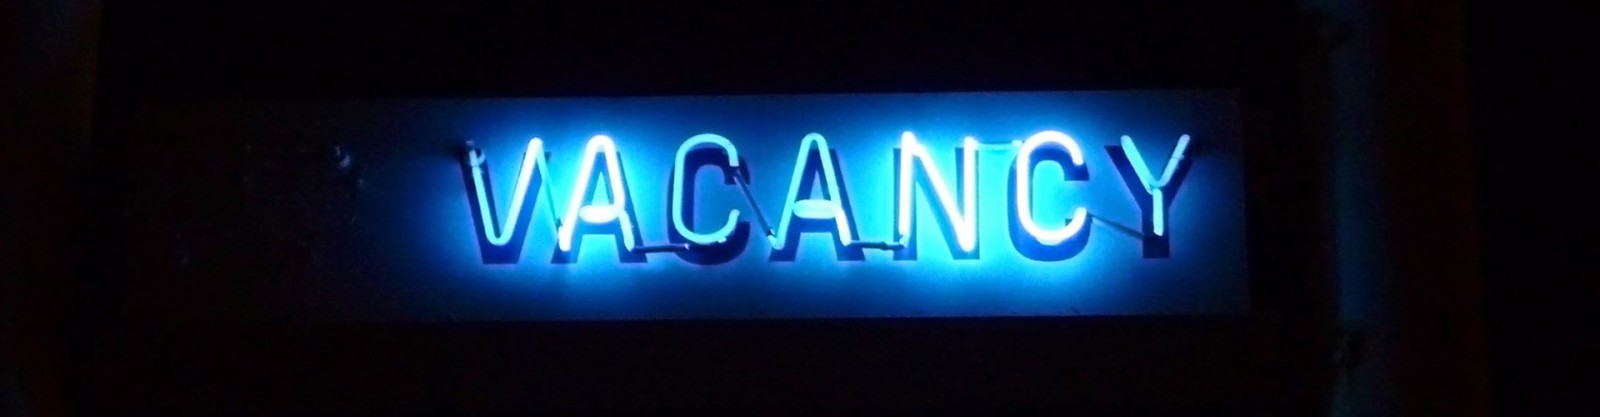 neon blue vacancy sign